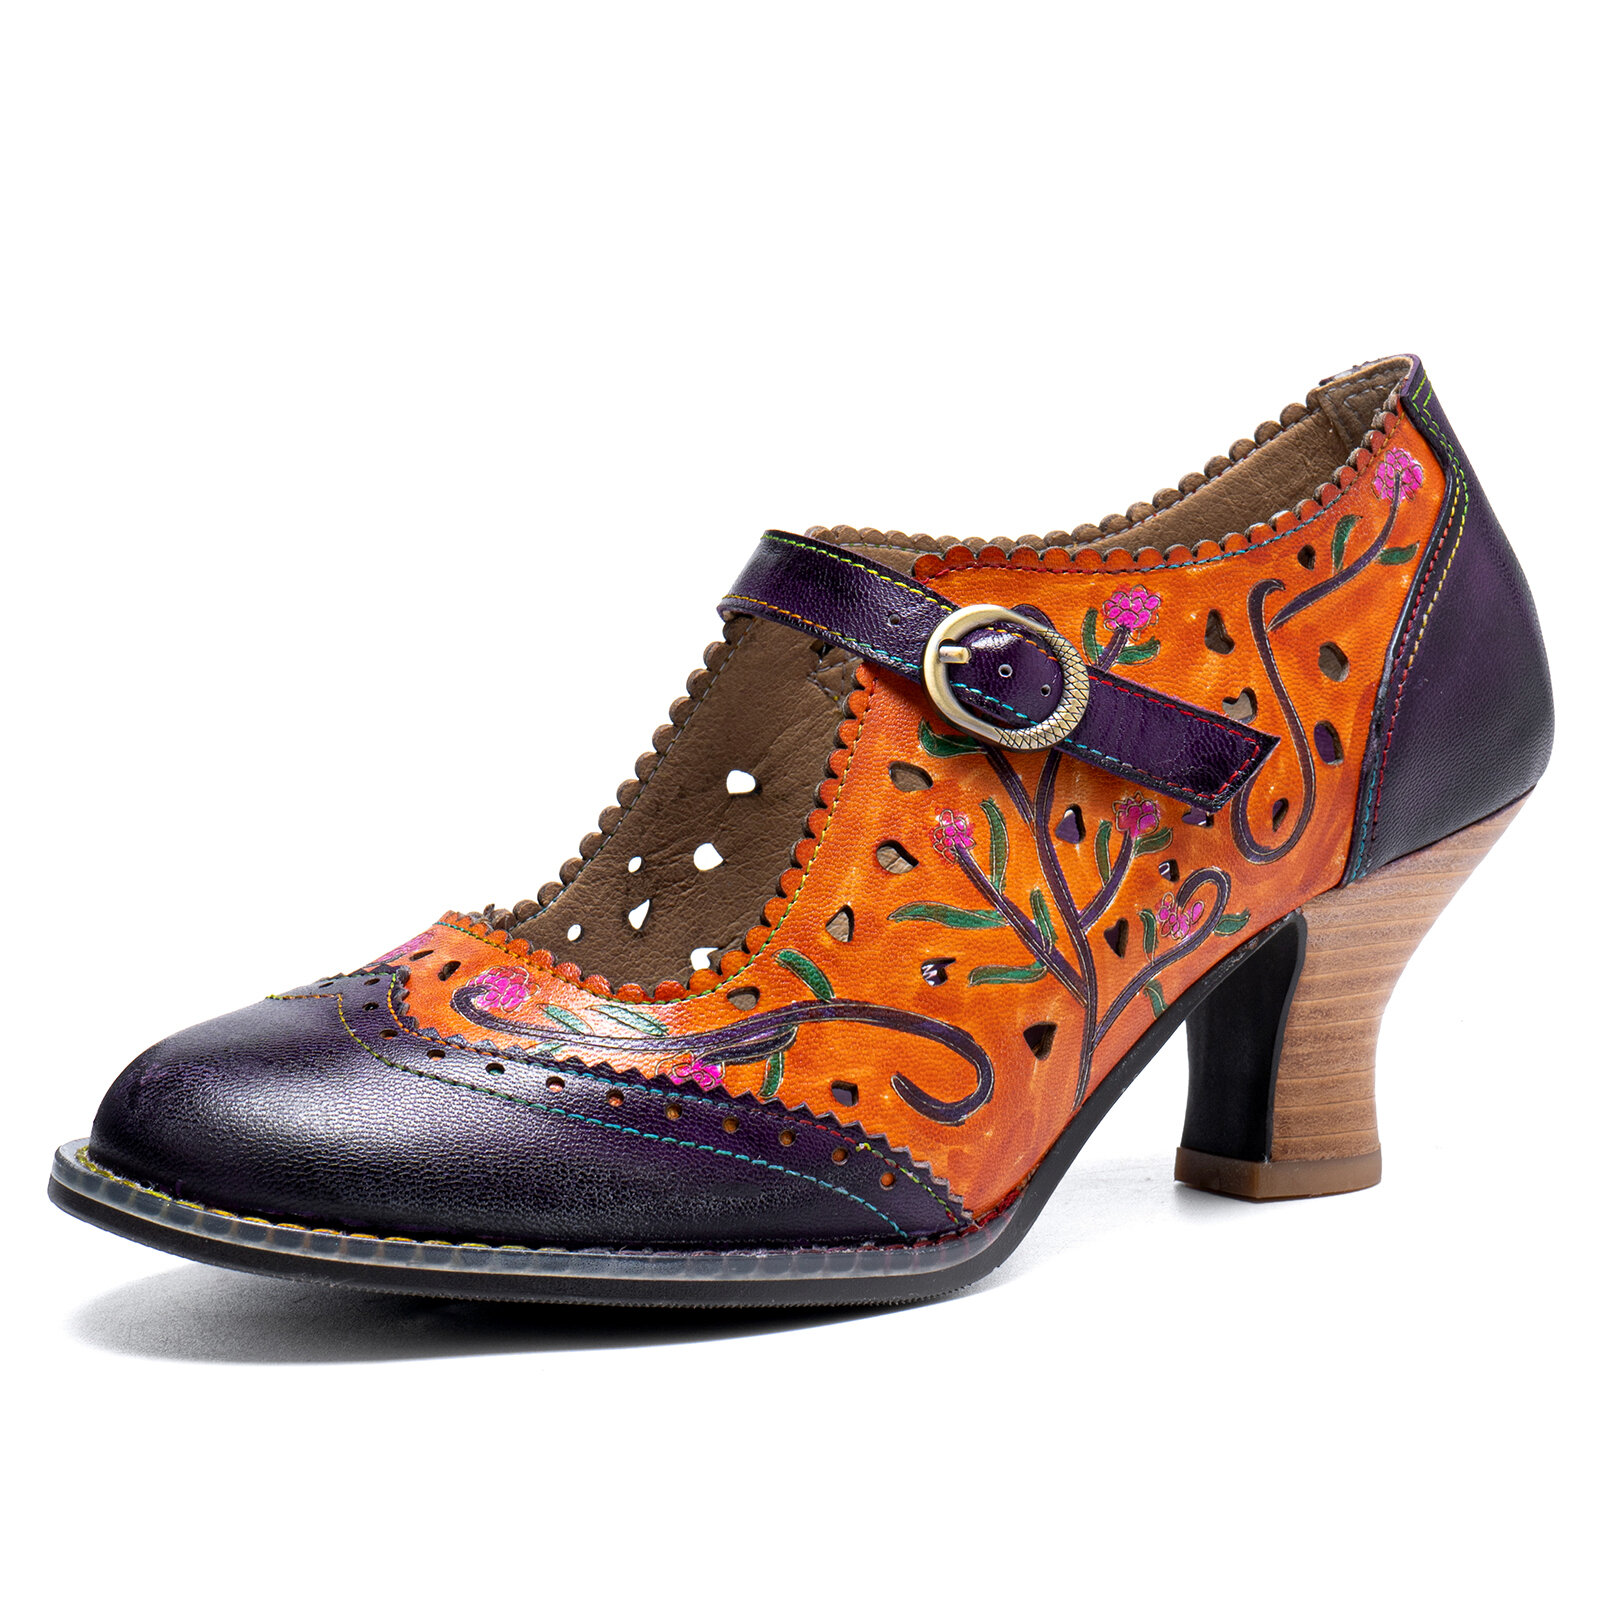 

Sокофи Натуральная Кожа Ретро Мода Цветочные цветные блоки Удобные дышащие полые туфли Мэри Джейн на каблуке